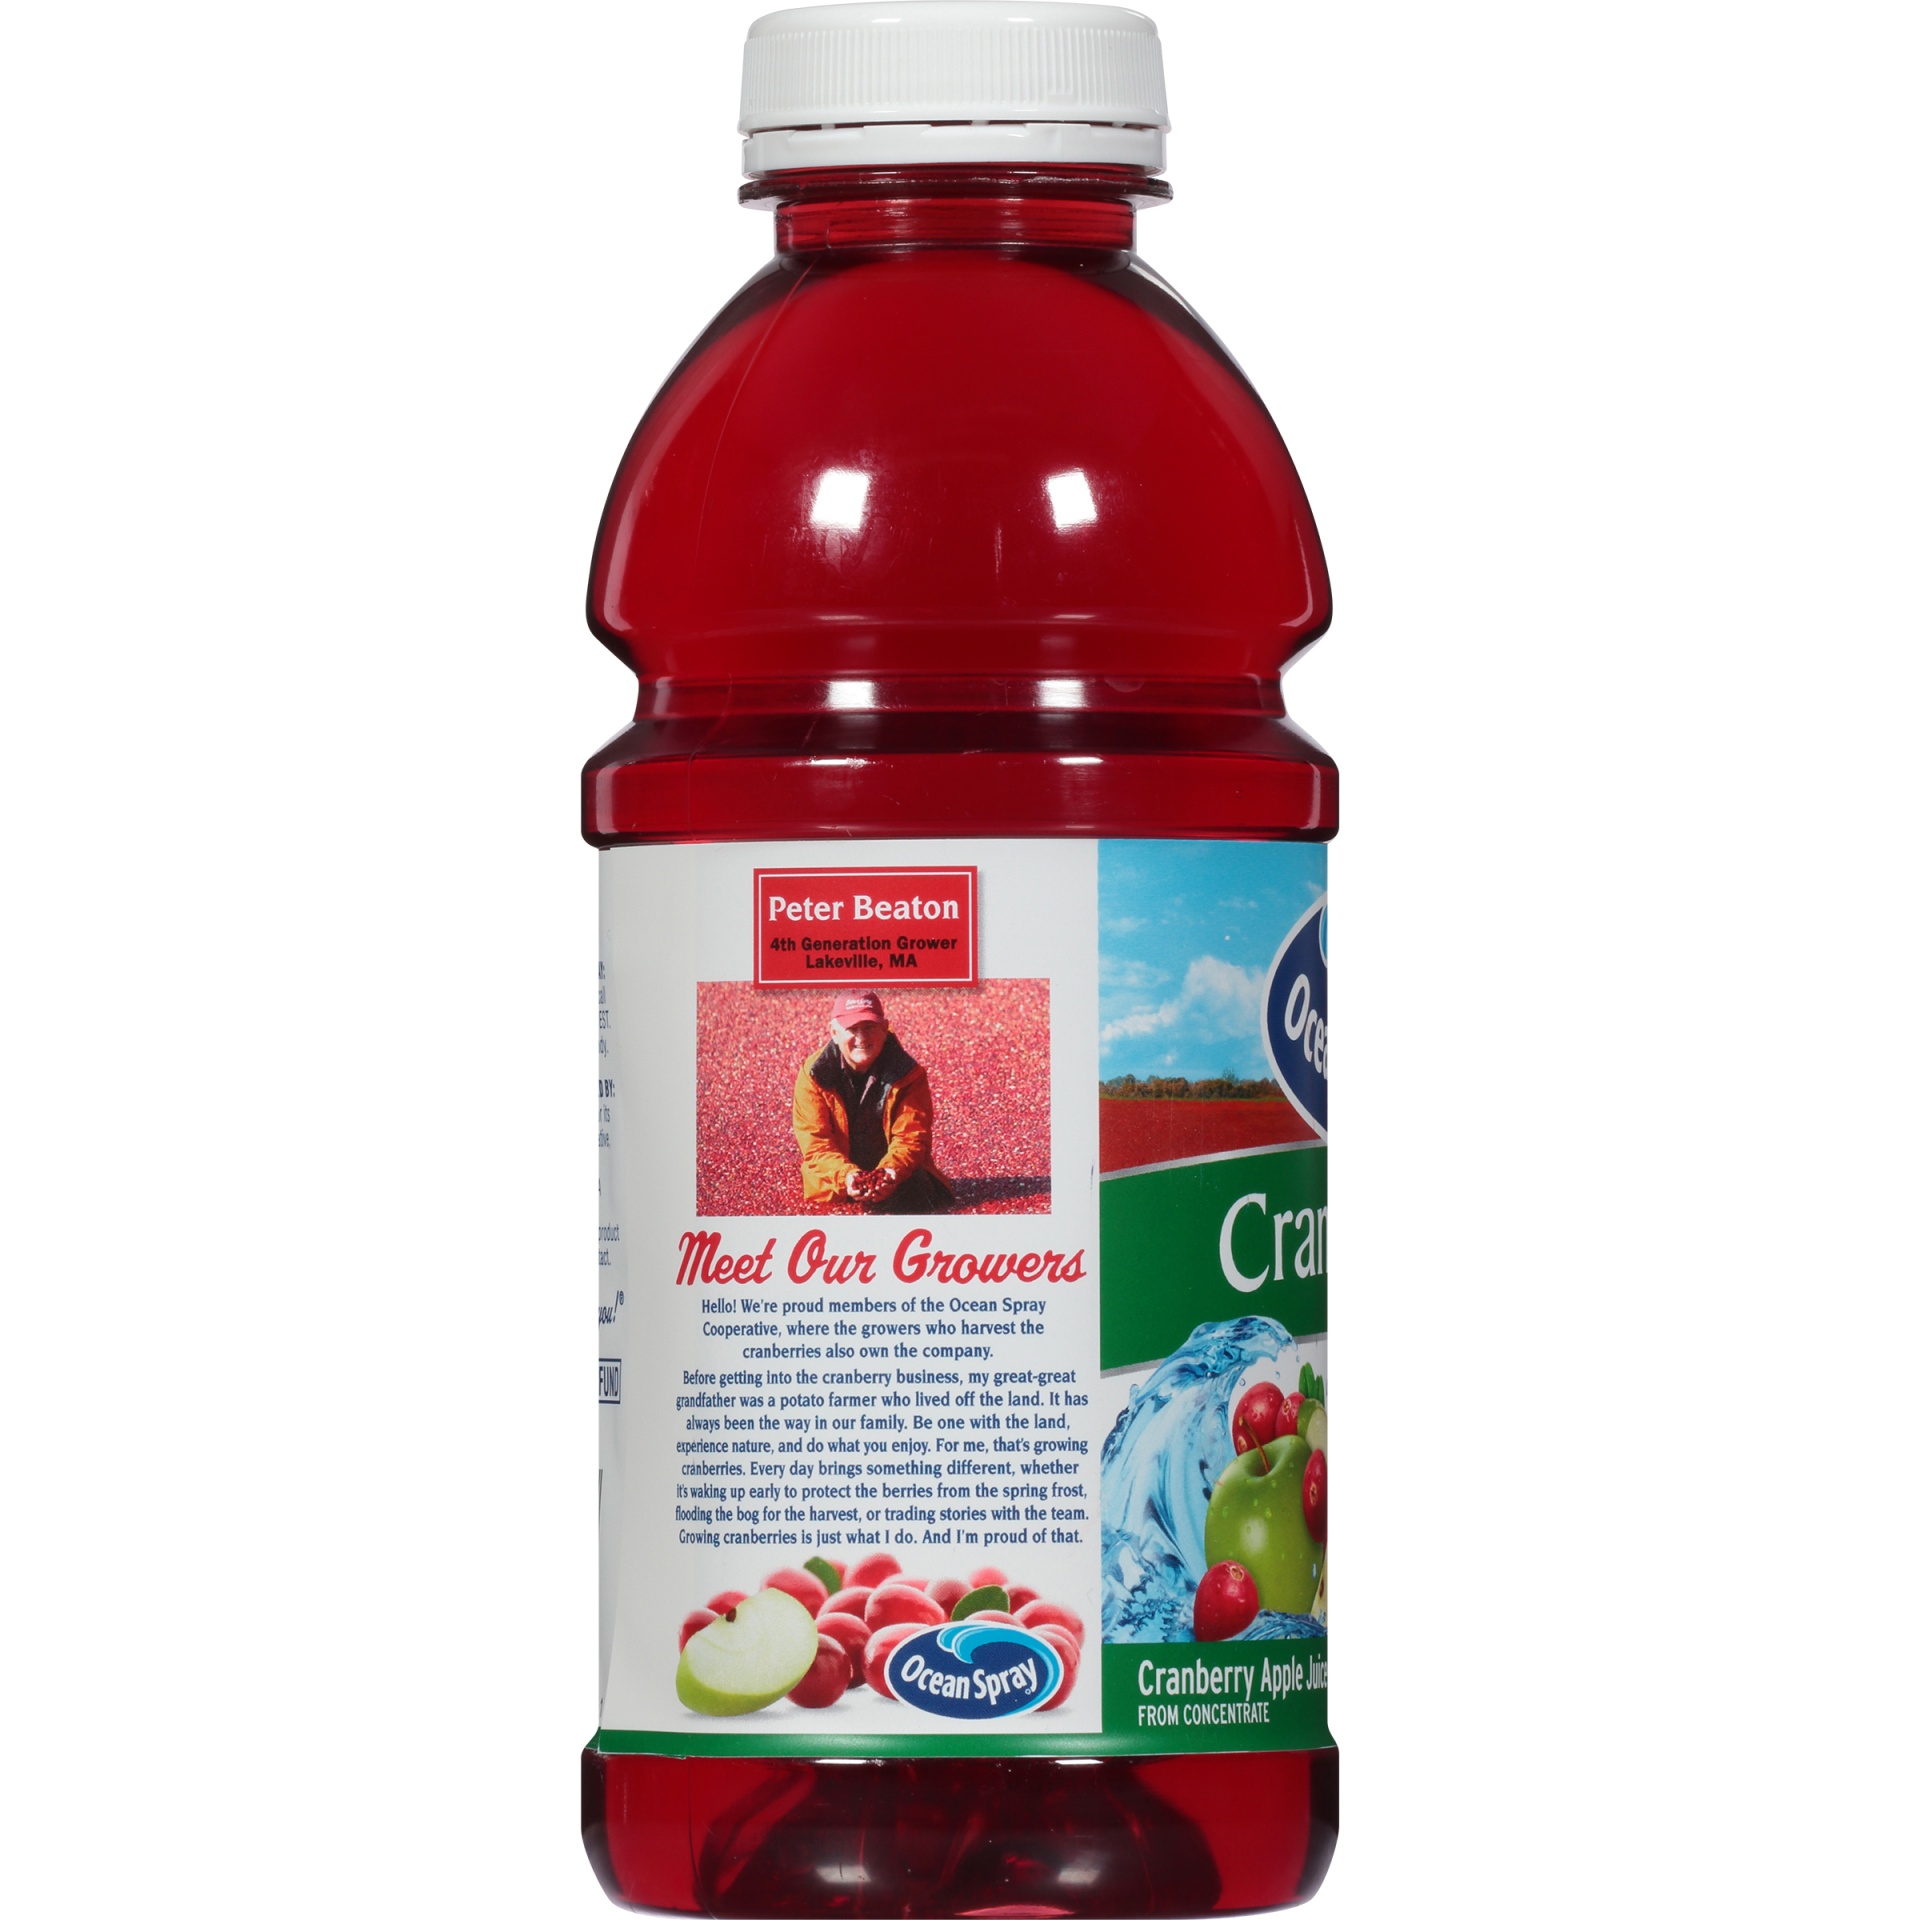 ocean spray cran apple juice reviews